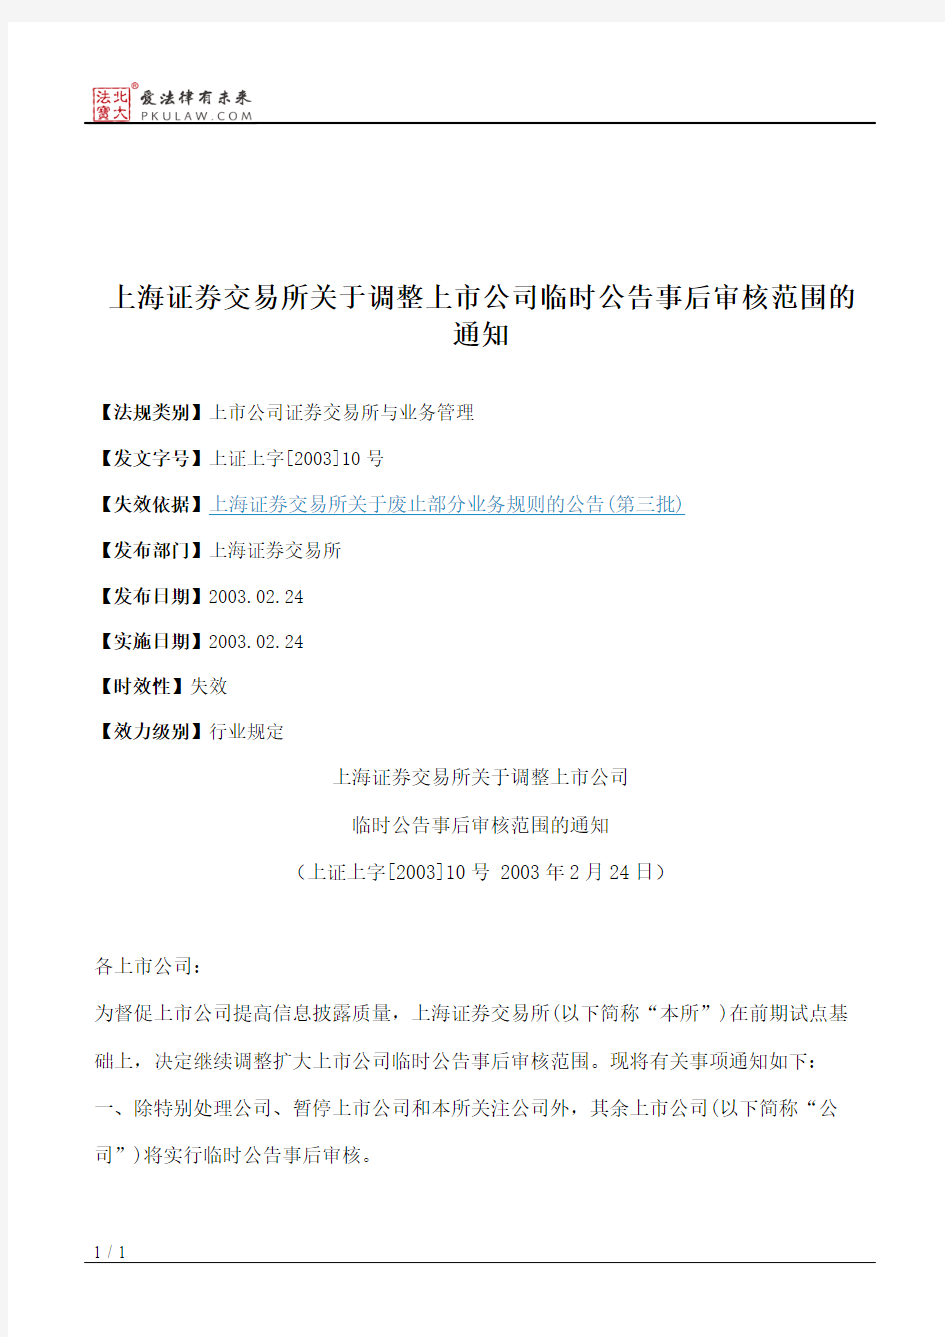 上海证券交易所关于调整上市公司临时公告事后审核范围的通知